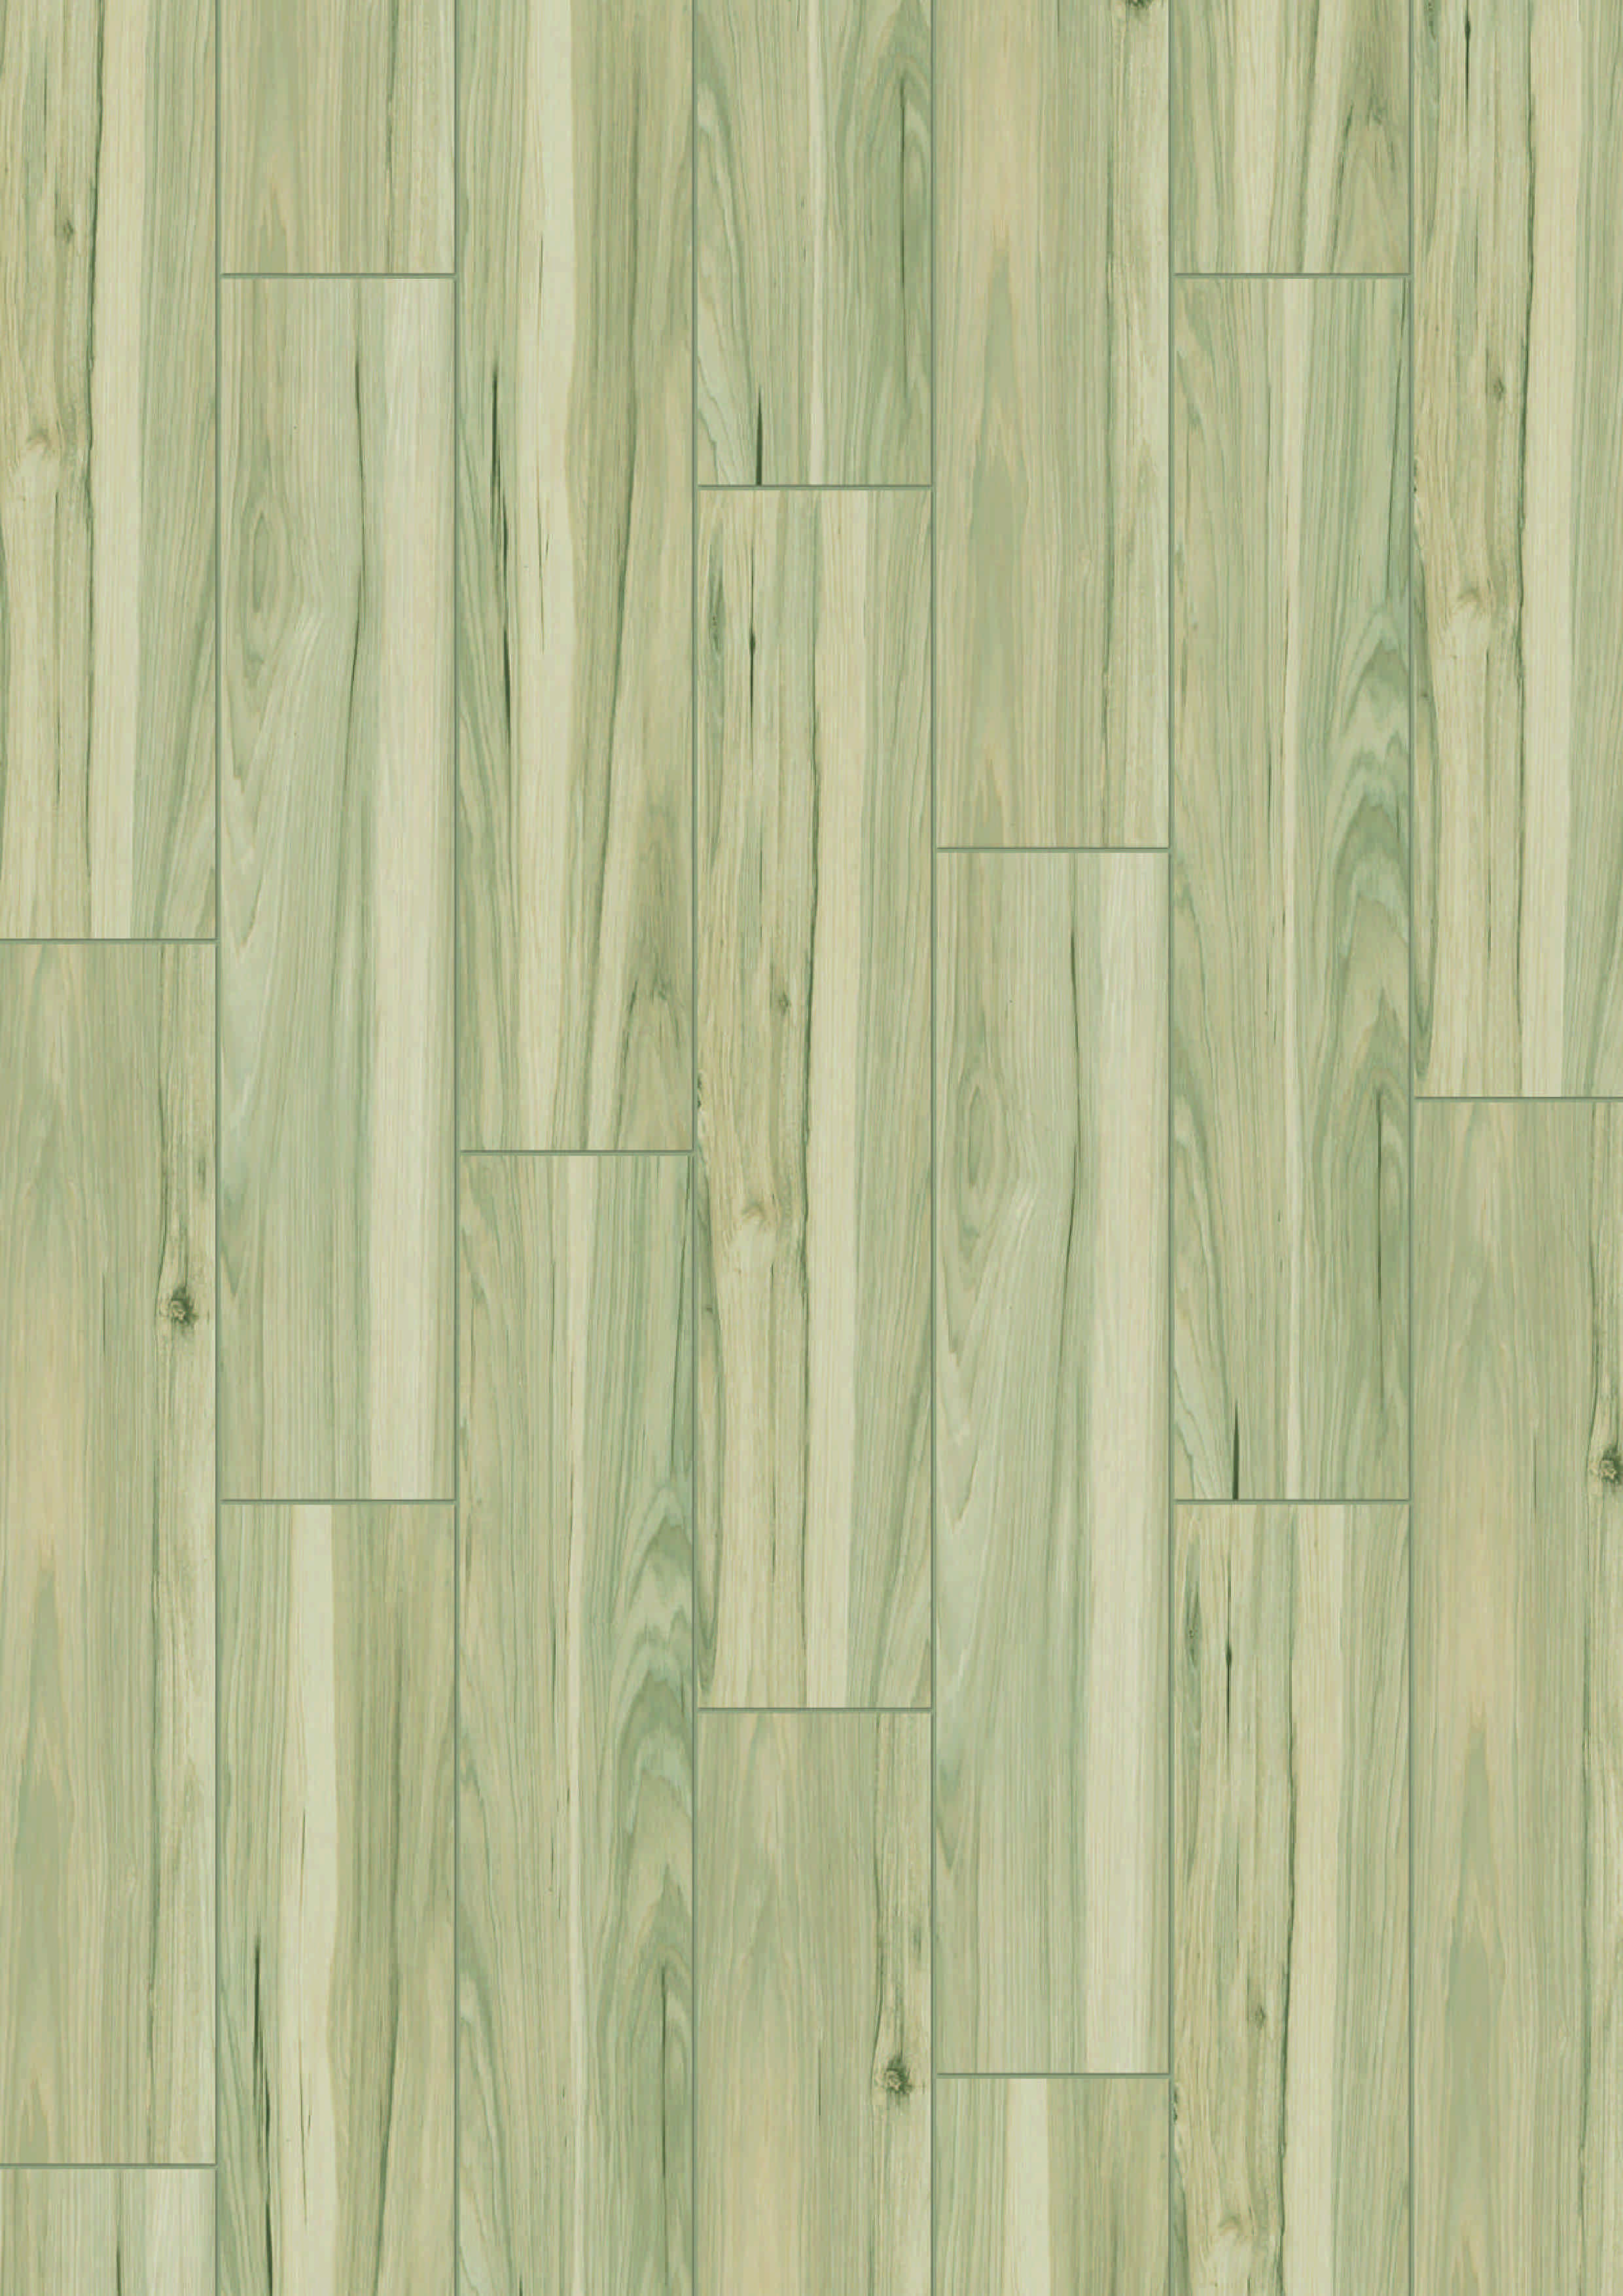 Decoria Mild  Tile DW 3201 Липа Синара - это универсальное покрытие для пола и стен,
представляет собой удачное соединение измельченной горной породы и
особо прочного винила.

Плитка имеет внешний печатный слой с нанесенным
винилом на поверхность, которые имитирует натуральные
материалы: гранит, мрамор, камень, дерево.

Виниловый защитный слой – это слой, предохраняющий
поверхность от истирания, а также обеспечивает защиту от
выцветания.

Печатный слой - пленка с нанесенным рисунком, имитирует
натуральные породы дерева, камень, керамику, сланец, зеленый
газон, металл.

Базовый несущий слой - это слой, представляющий собой смесь
мельчайших частиц горной породы с добавлением винила.